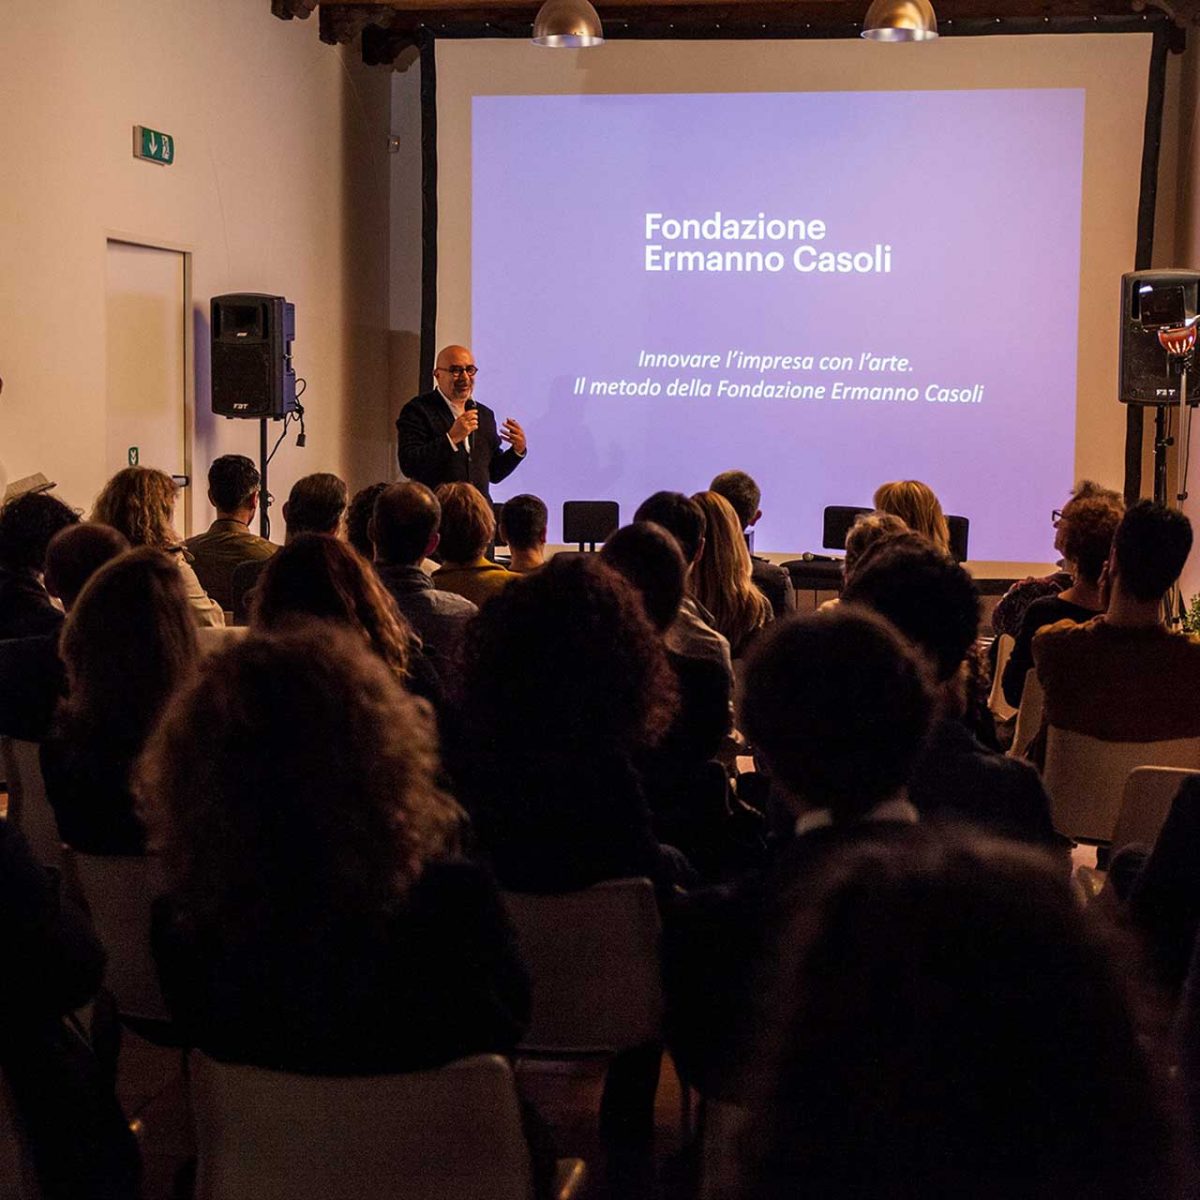 #talk "Innovare l’impresa con l’Arte" con Marcello Smarrelli